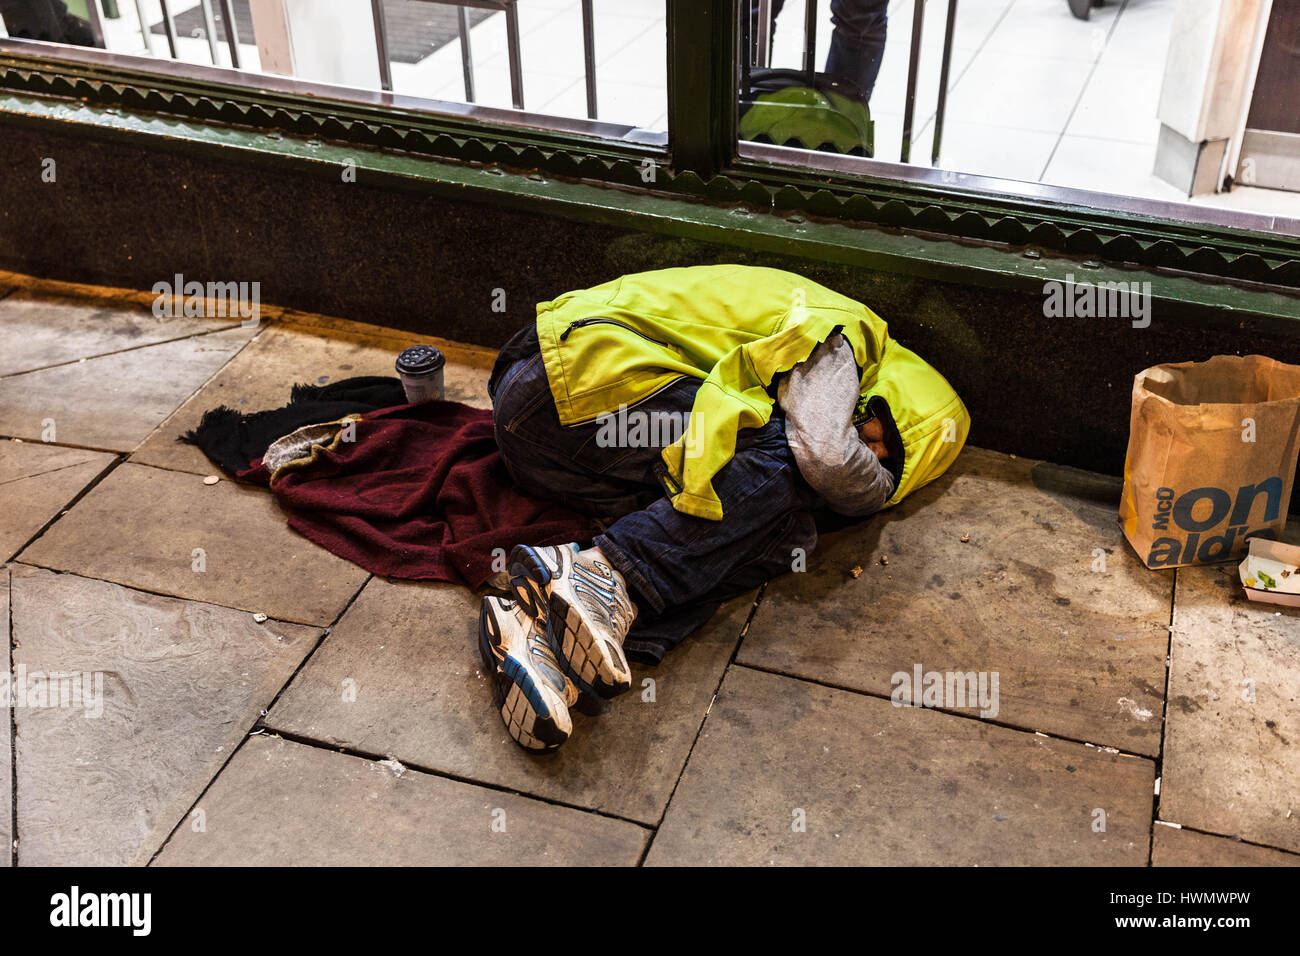 Obdachlosen Mann der Straße auf einem Bürgersteig, London, England, UK Stockfoto